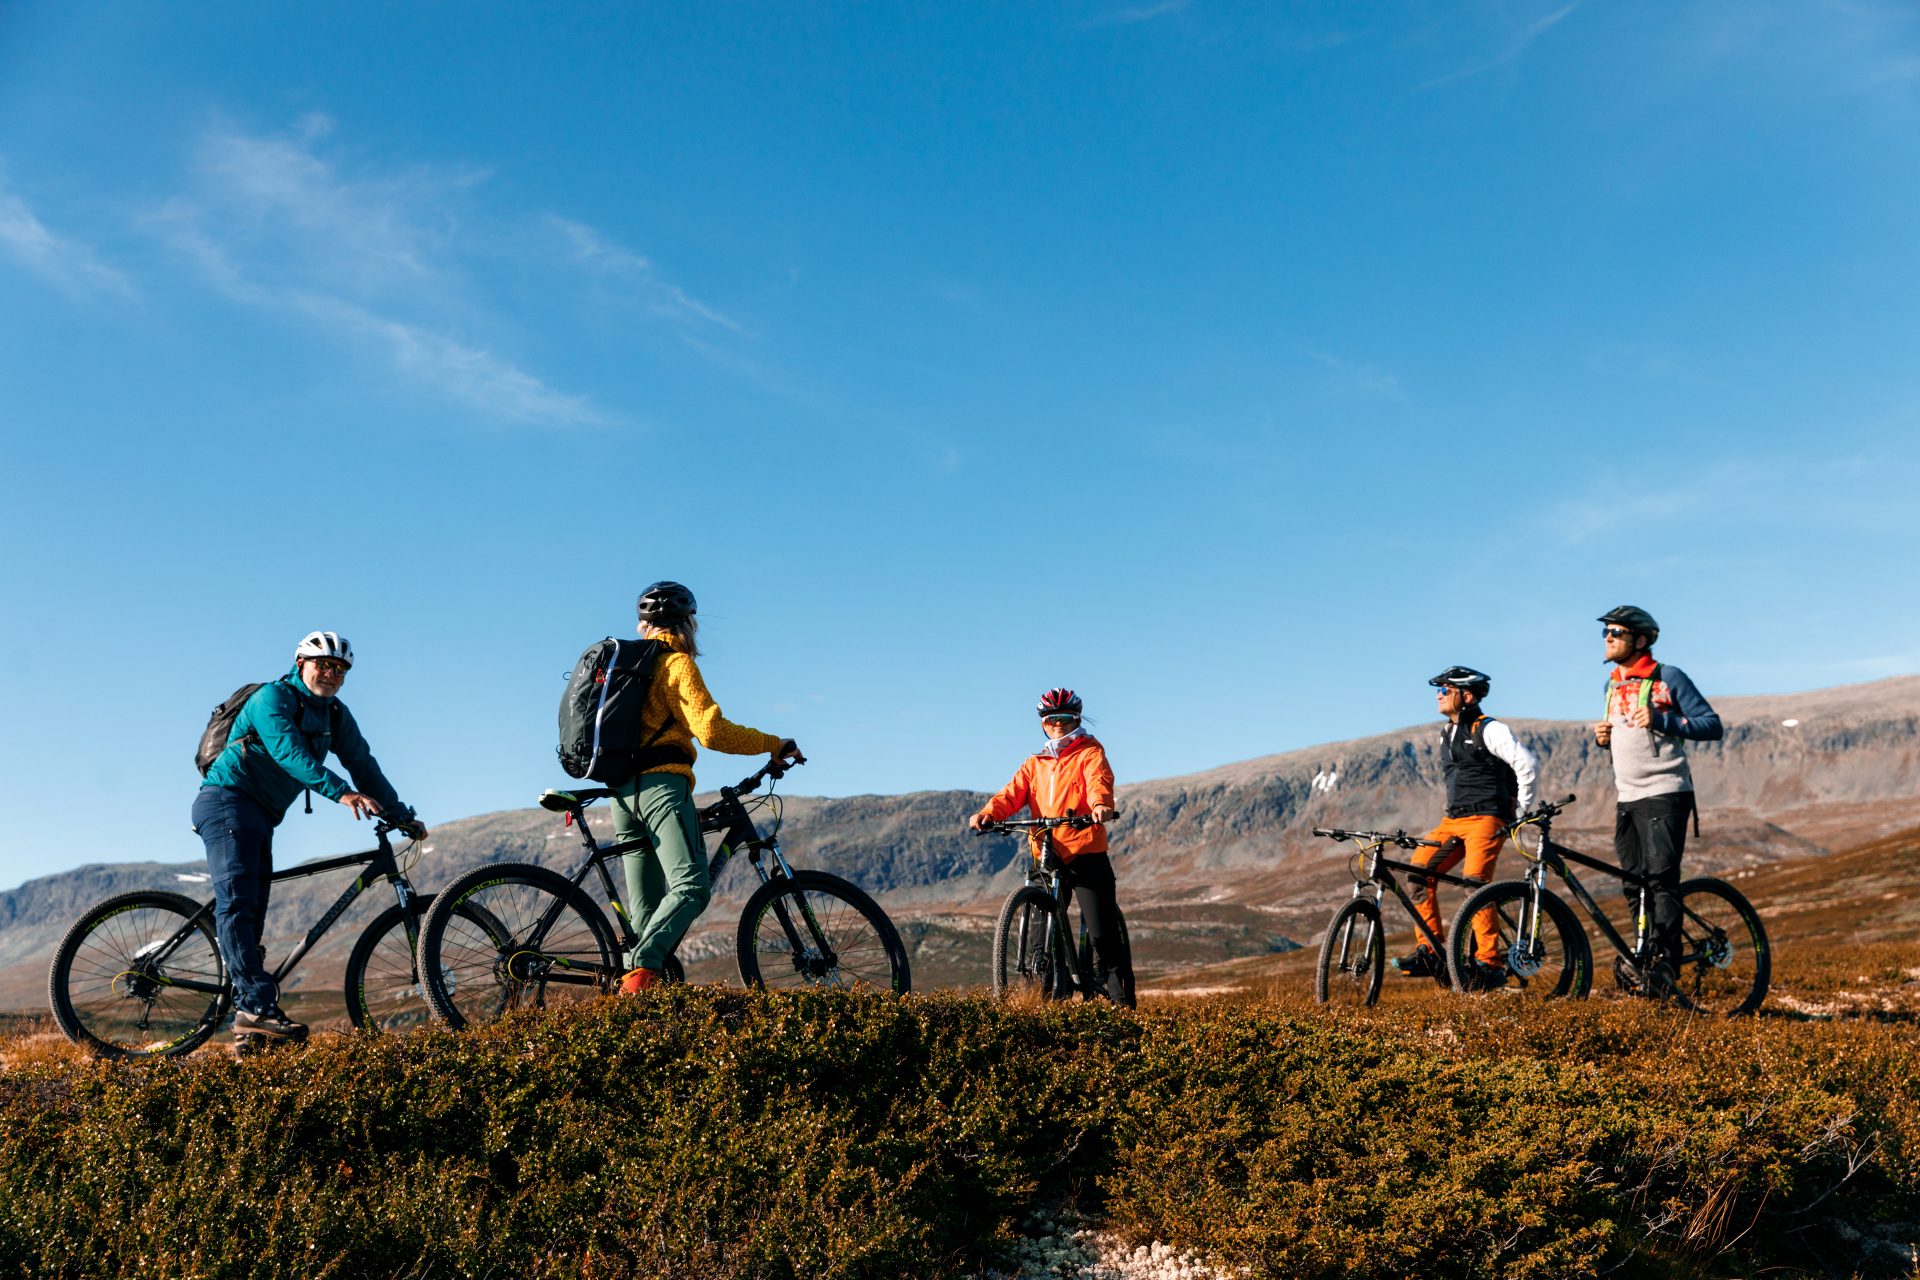 Gruppe på sykkeltur med fjell i bakgrunn. Høstfarger og klar blå himmel.